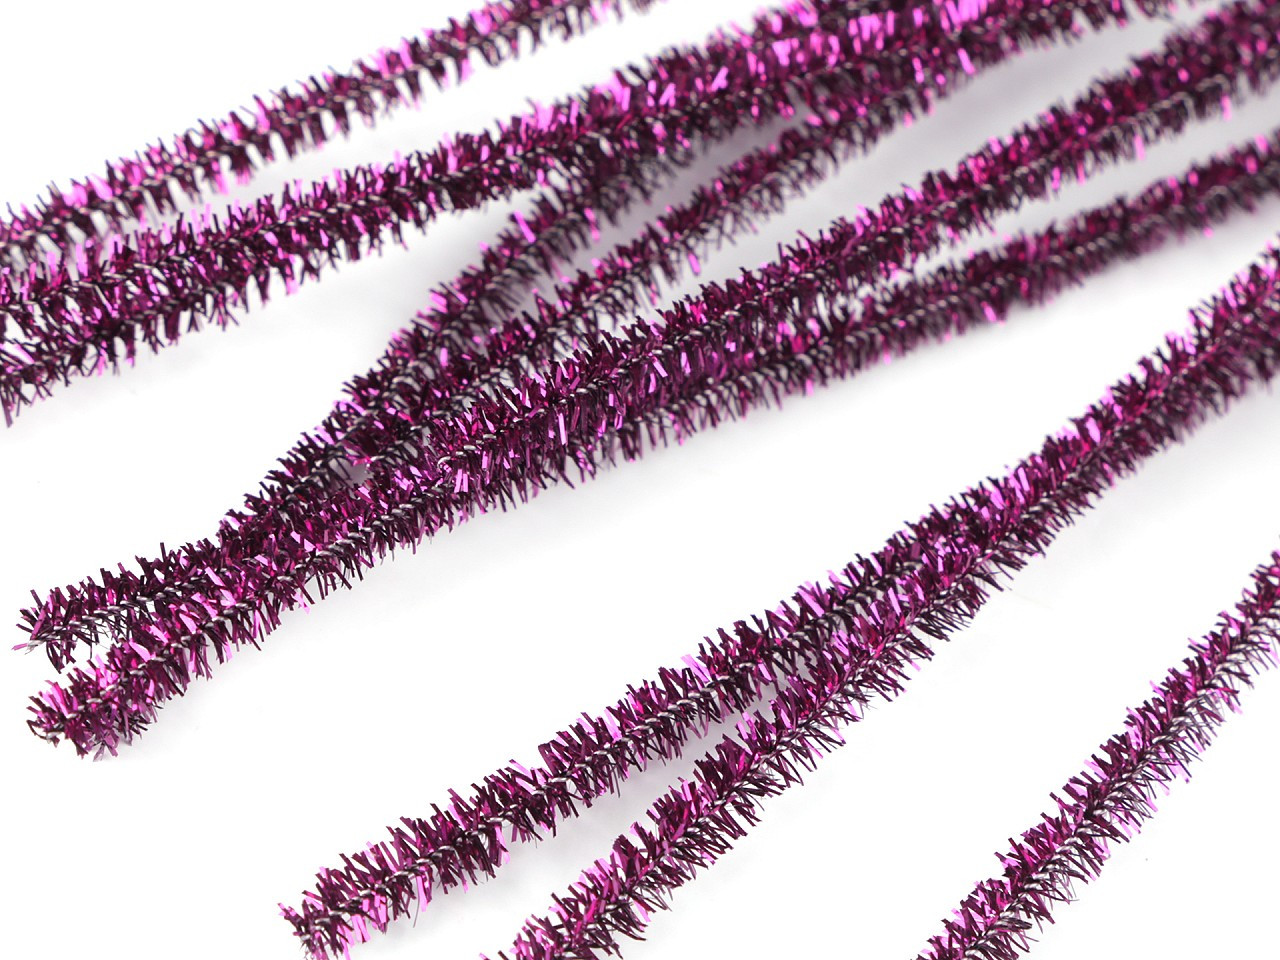 Chlupaté modelovací lurexové drátky Ø6 mm délka 30 cm, barva 5 fialová purpura